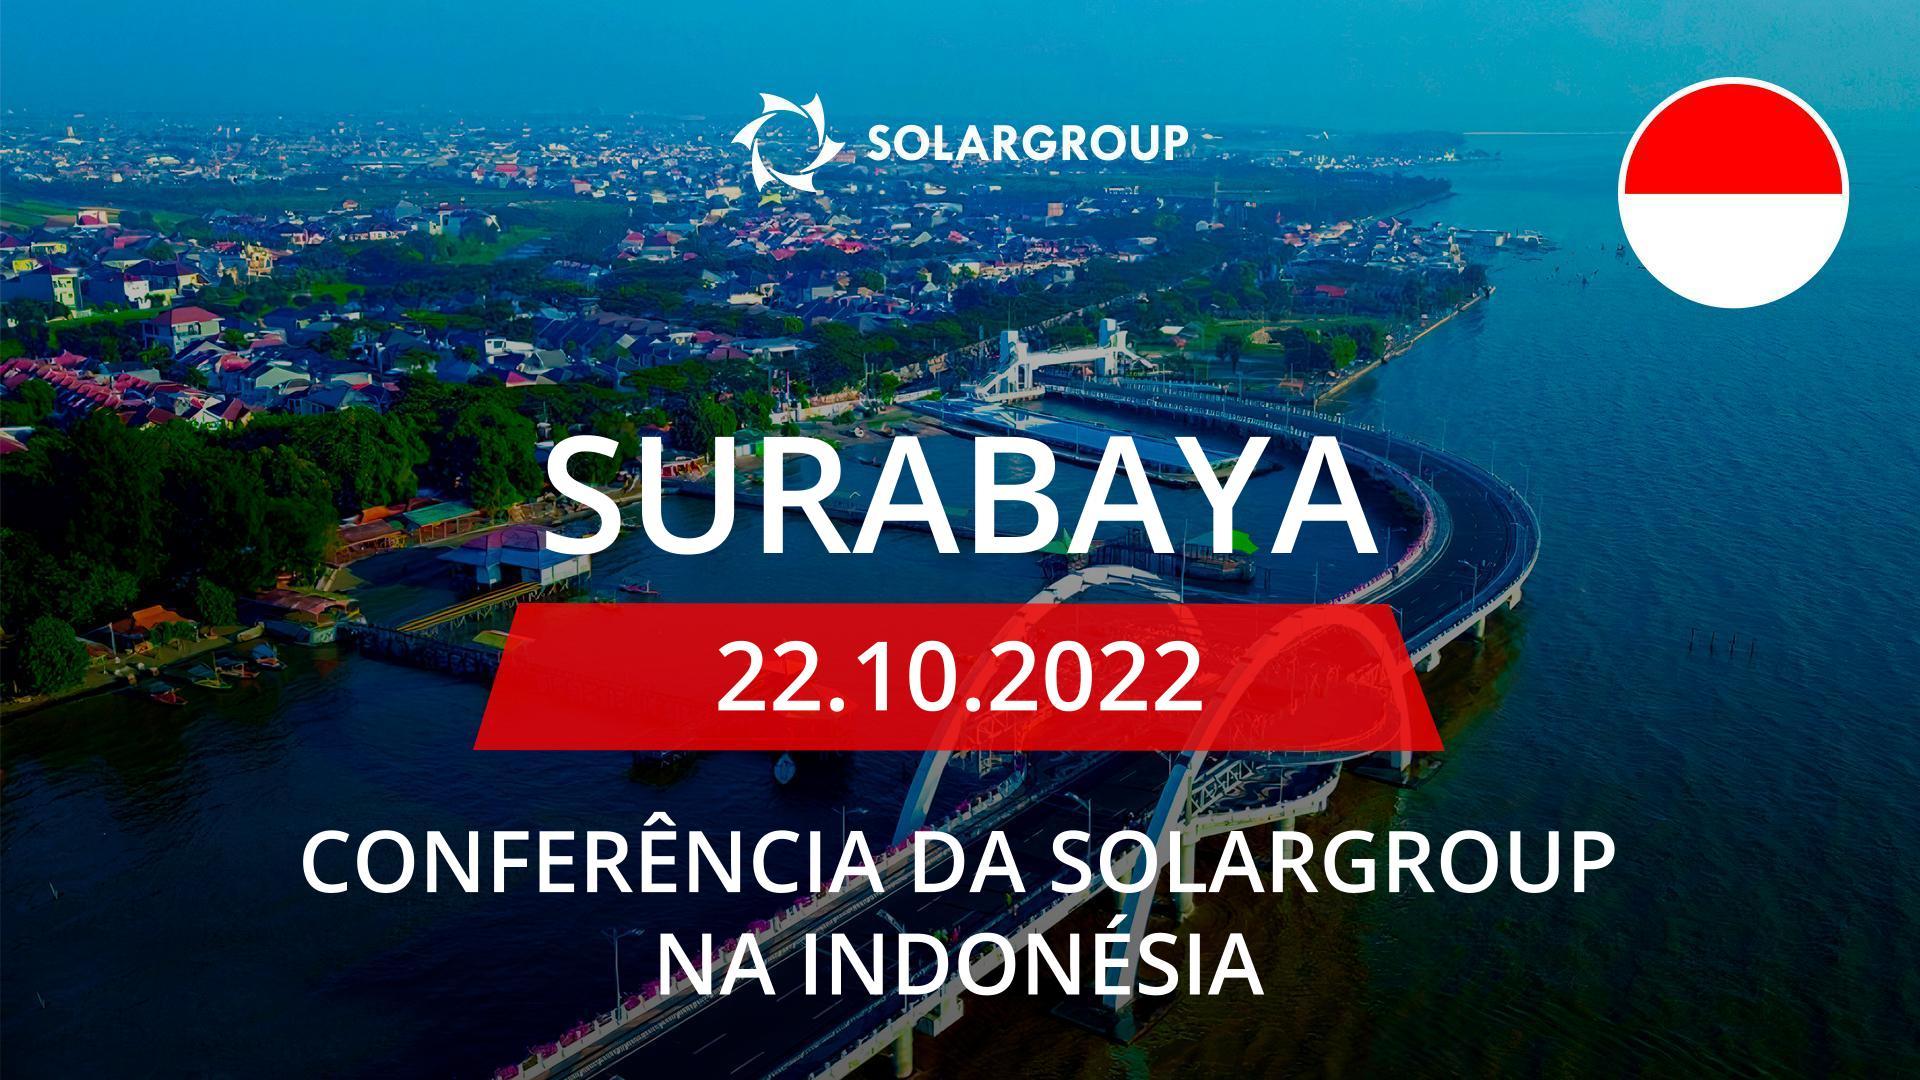 Conferência da SOLARGROUP na Indonésia: dia 22 de outubro, em Surabaya